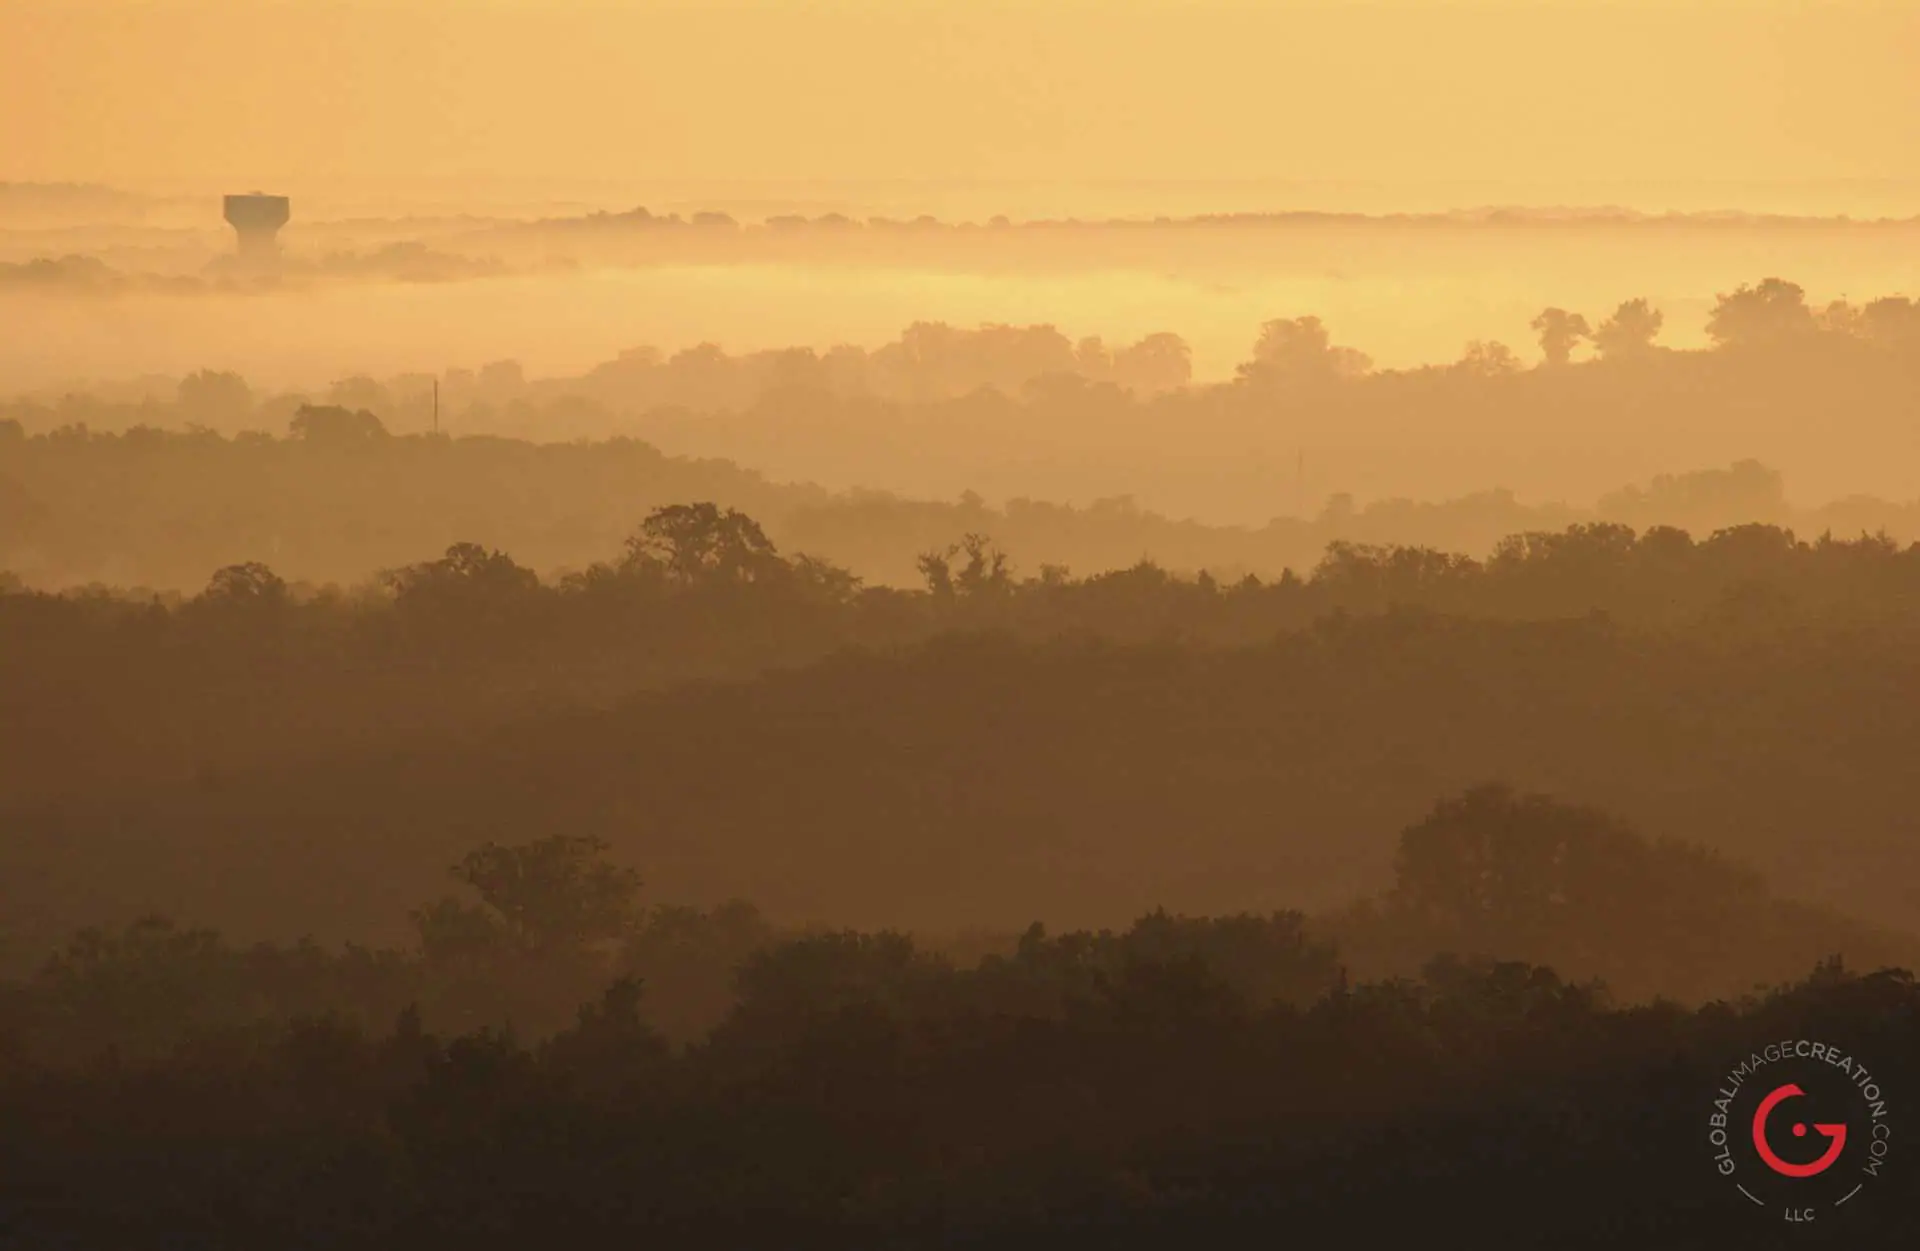 Ozark mountain hills in the morning fog. Golden sun illuminates the cut paper hills. - Advertising photographers in Branson Missouri, Branson Missouri photography